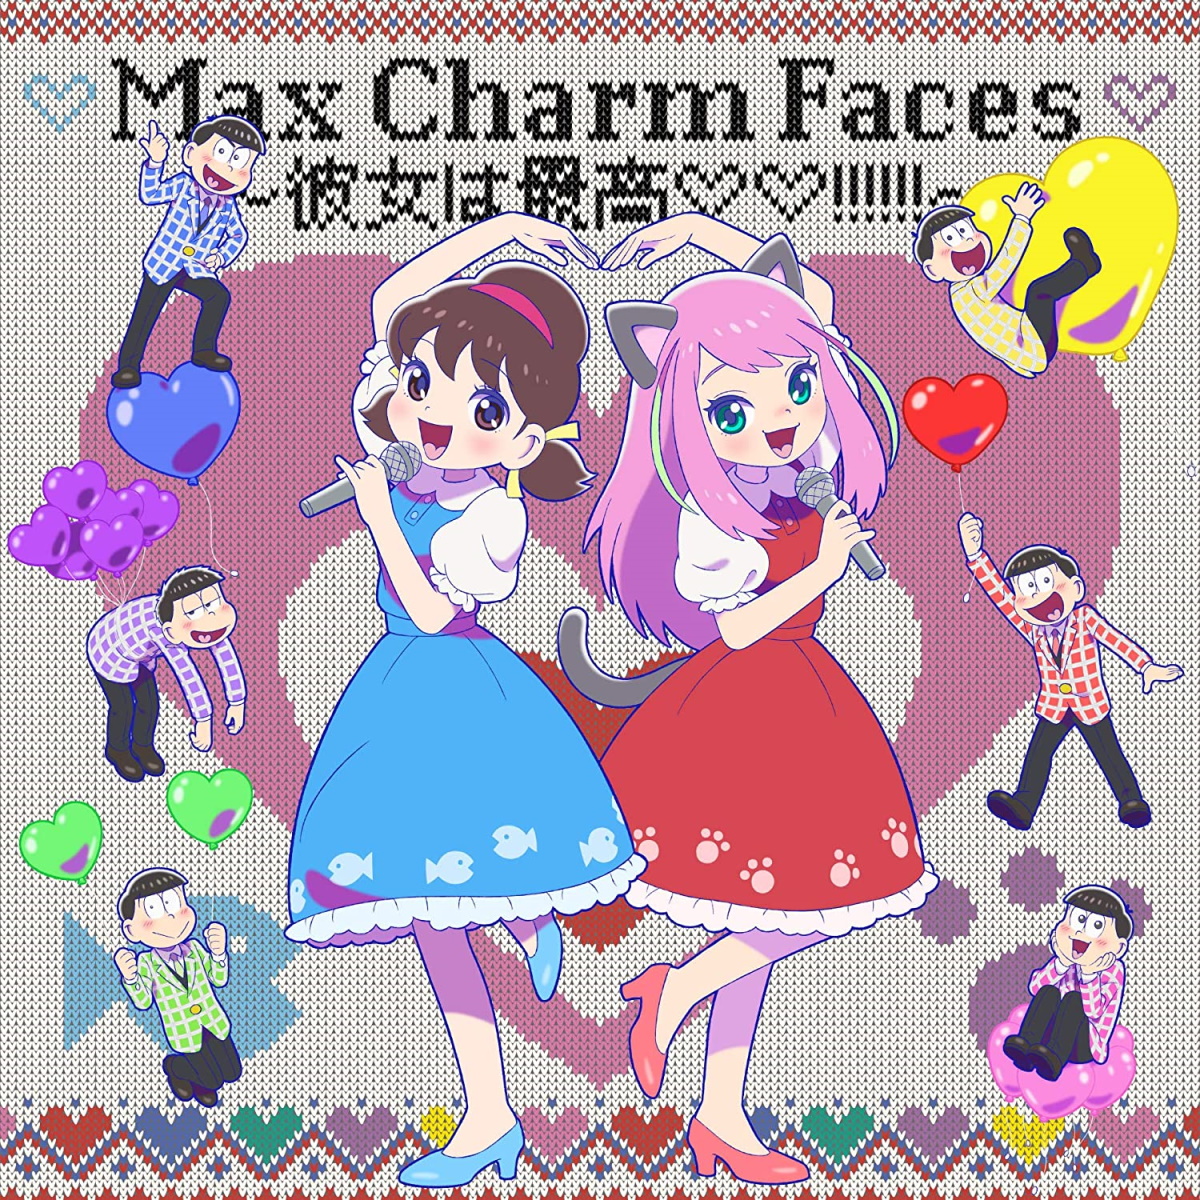 Cover for『Shuta Sueyoshi with Totoko♡Nya & Matsuno-ke 6 Kyoudai - Max Charm Faces: Kanojo wa Saikou♡♡!!!!!!』from the release『Max Charm Faces: Kanojo wa Saikou♡♡!!!!!!』